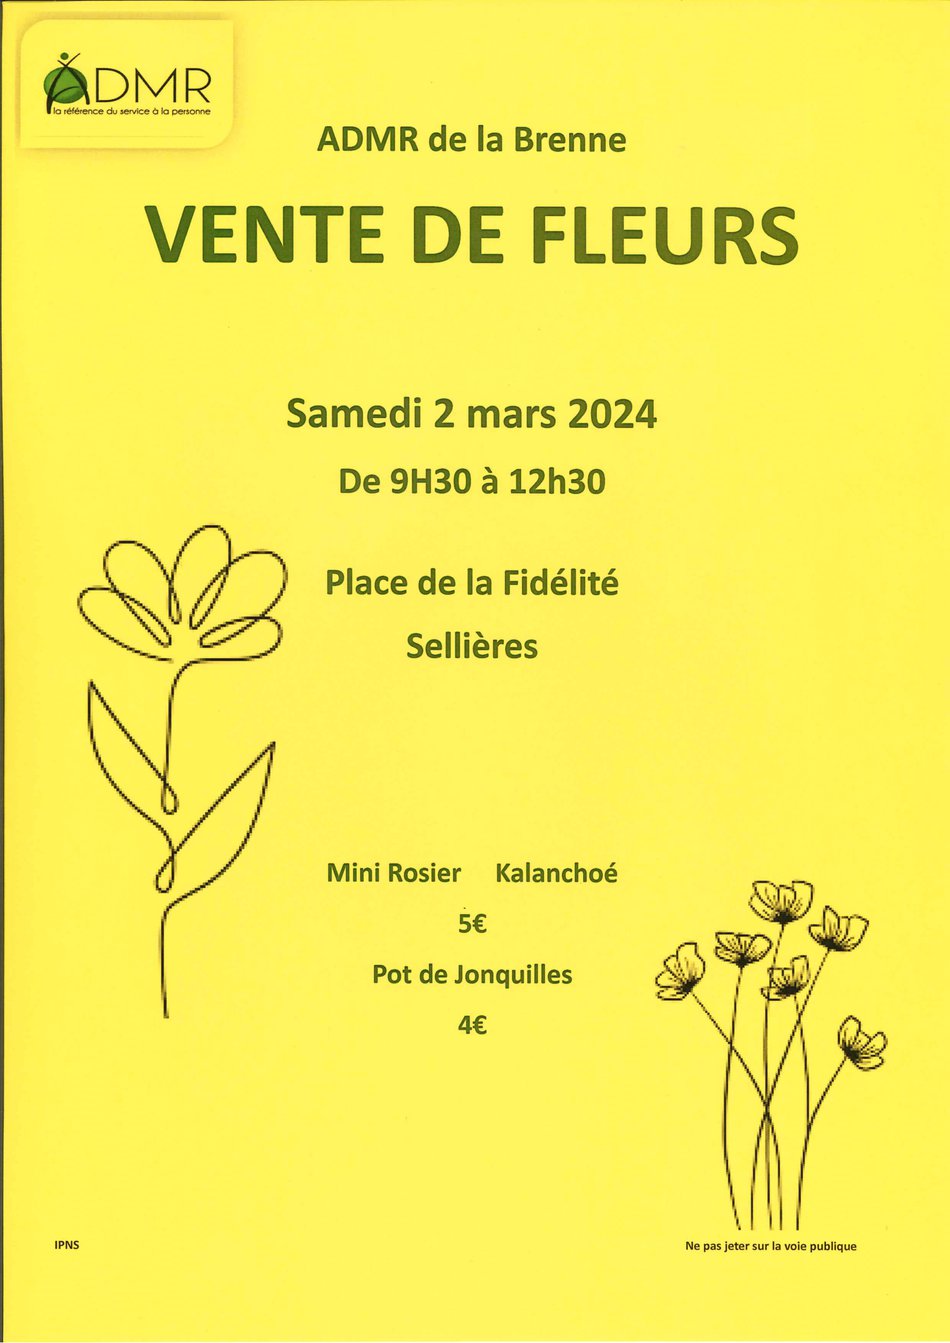 L'ADMR de la Brenne propose une vente de fleurs